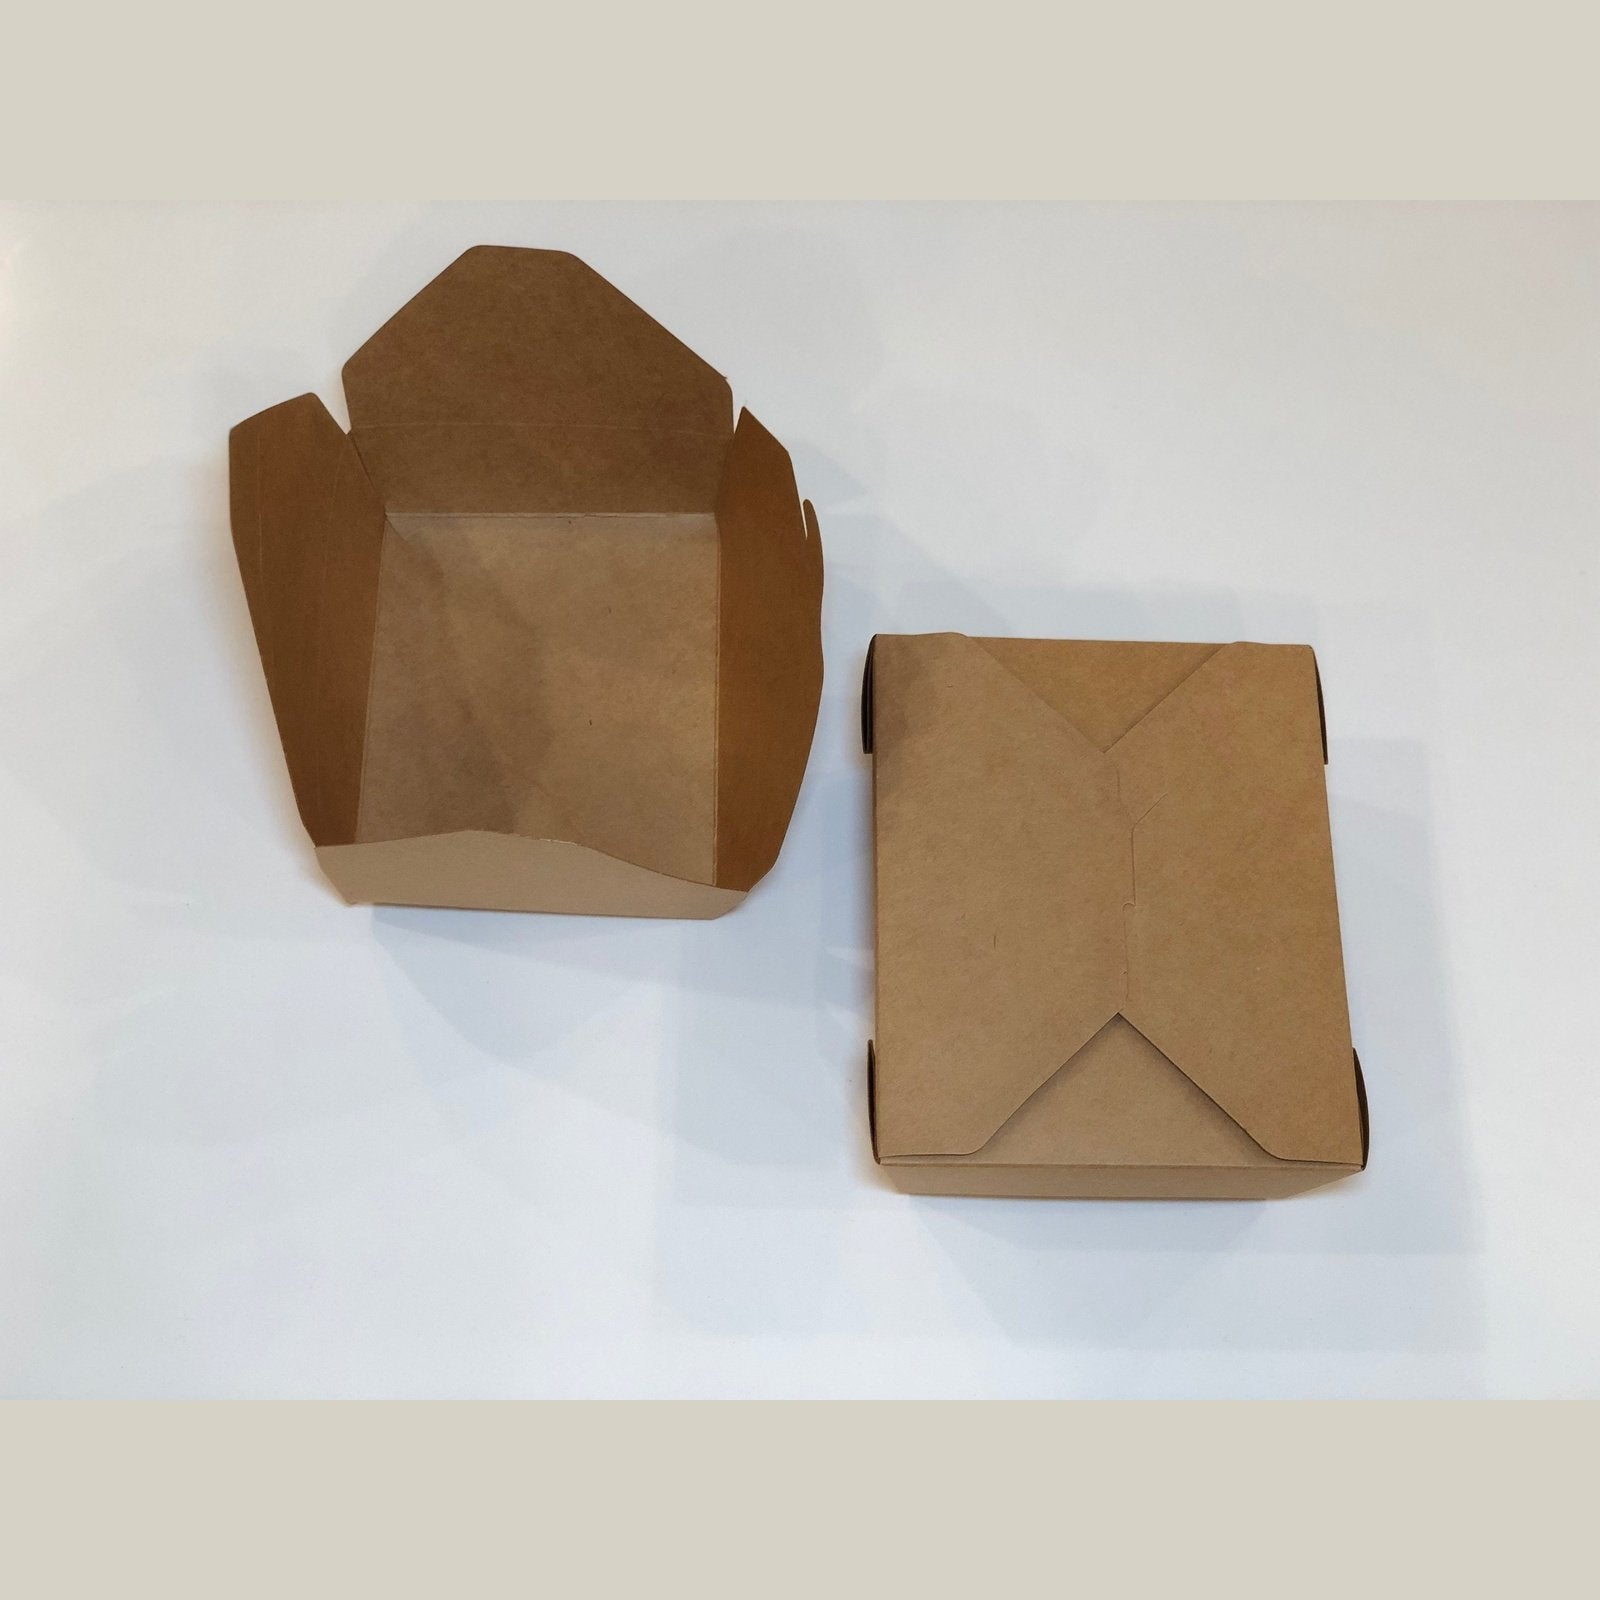 Paper Box For Food - VinzorWood